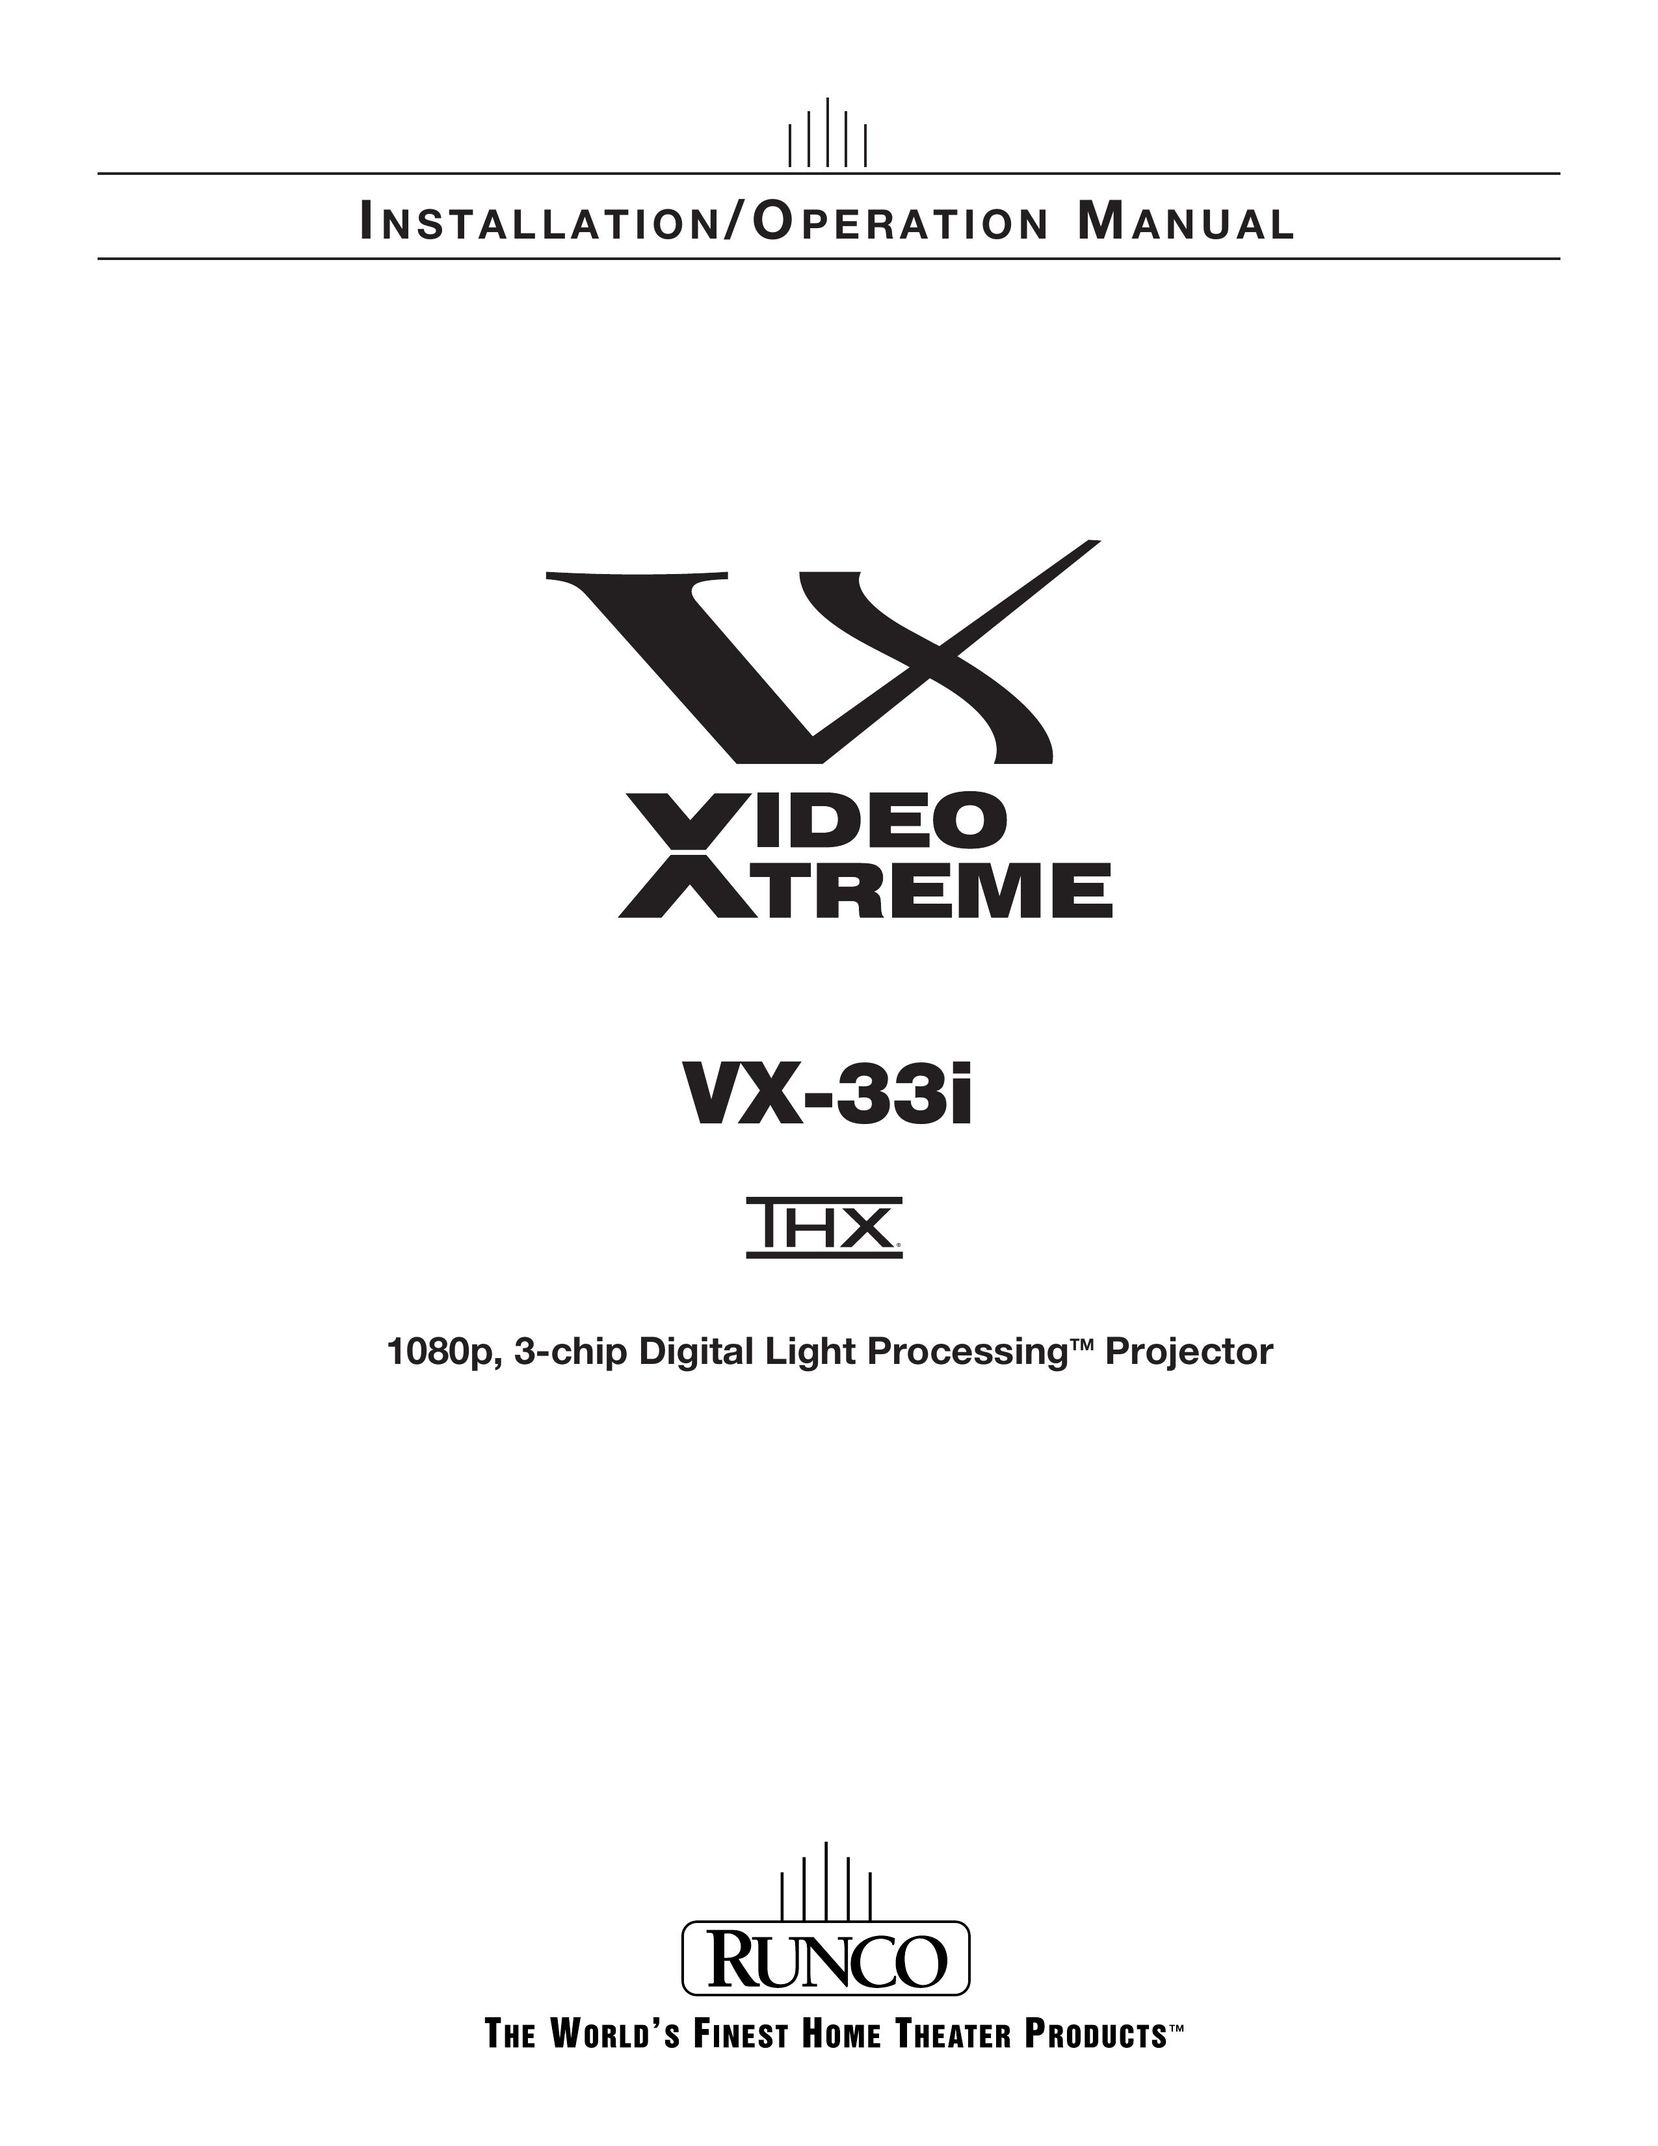 Runco VX-33I Projector User Manual